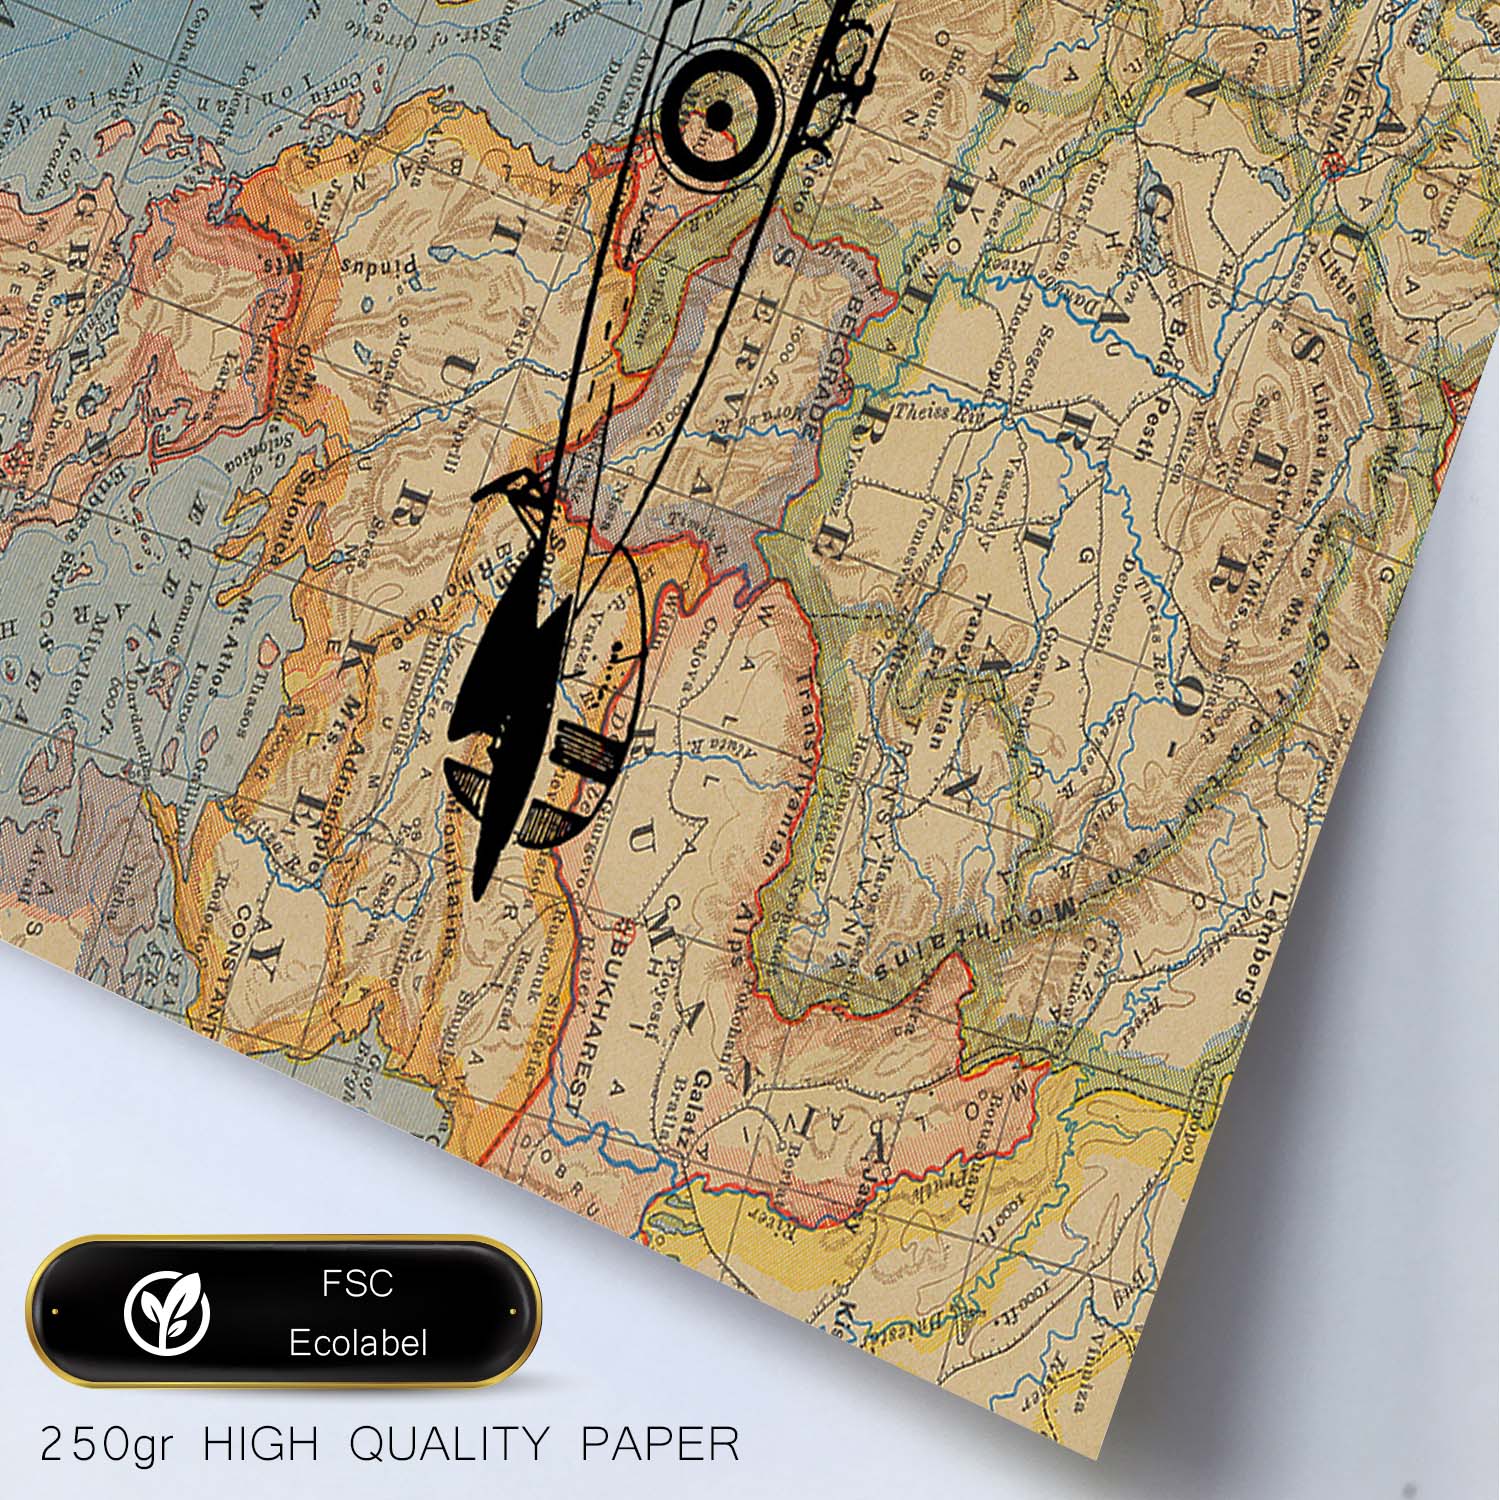 Posters de objetos sobre mapas. Lámina En Avioneta a Europa, con diseño de objetos sobre mapas vintage.-Artwork-Nacnic-Nacnic Estudio SL